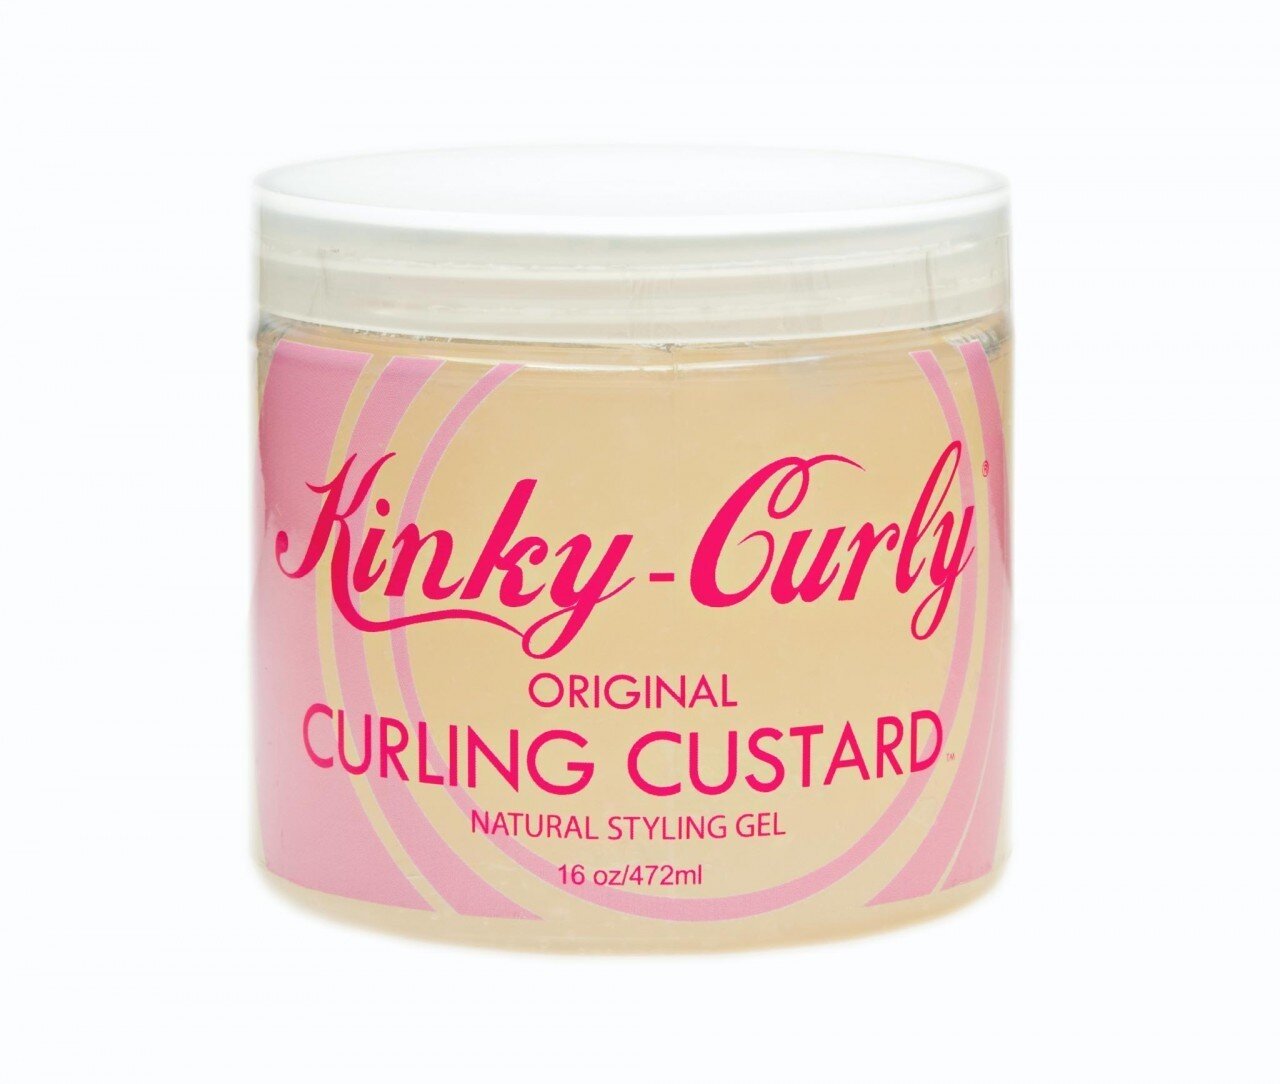 Kinky curly curl custard